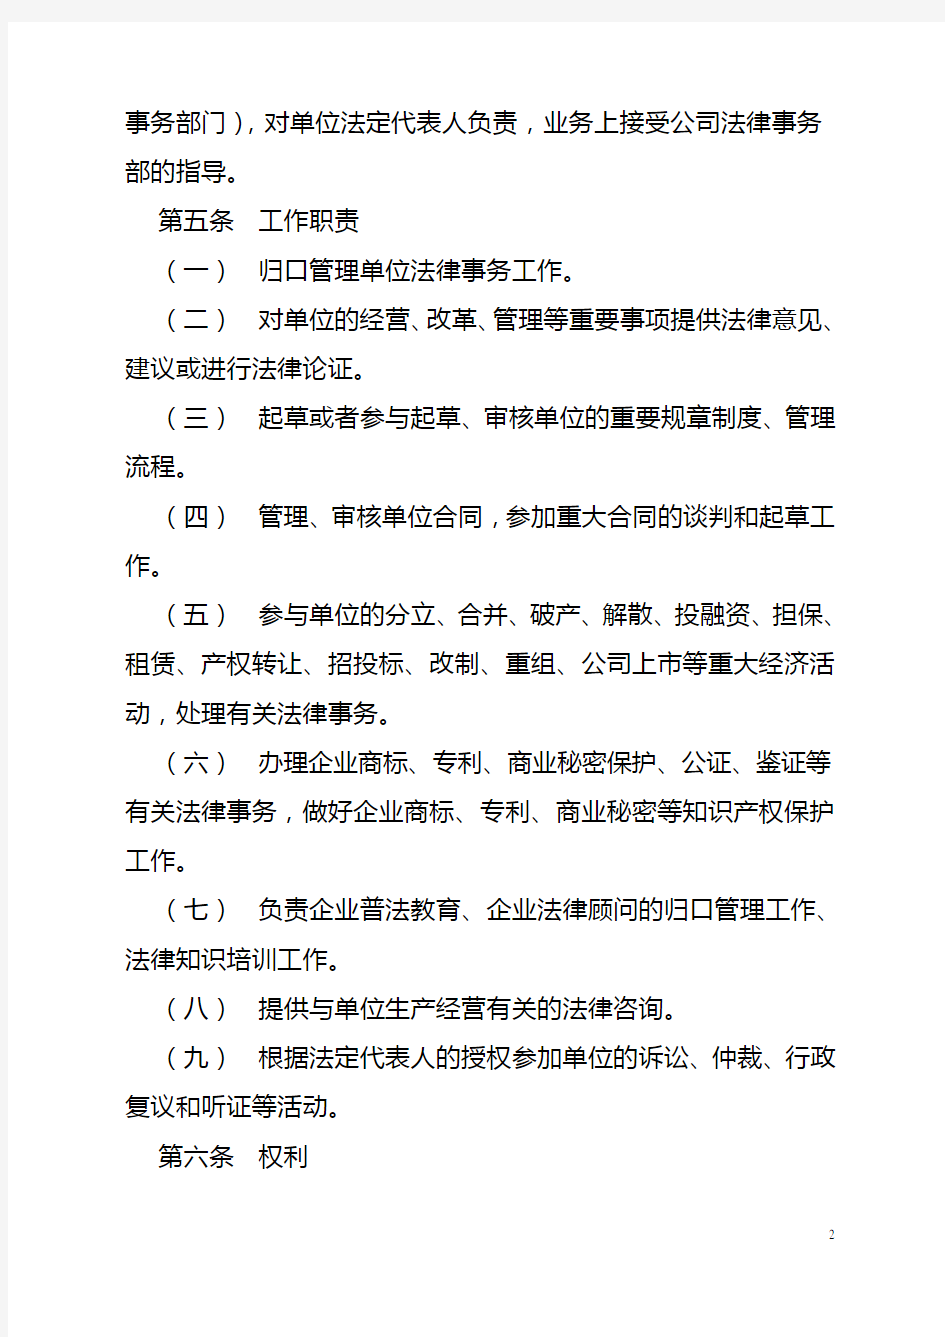 中交第四航务工程局有限公司法律事务管理规定